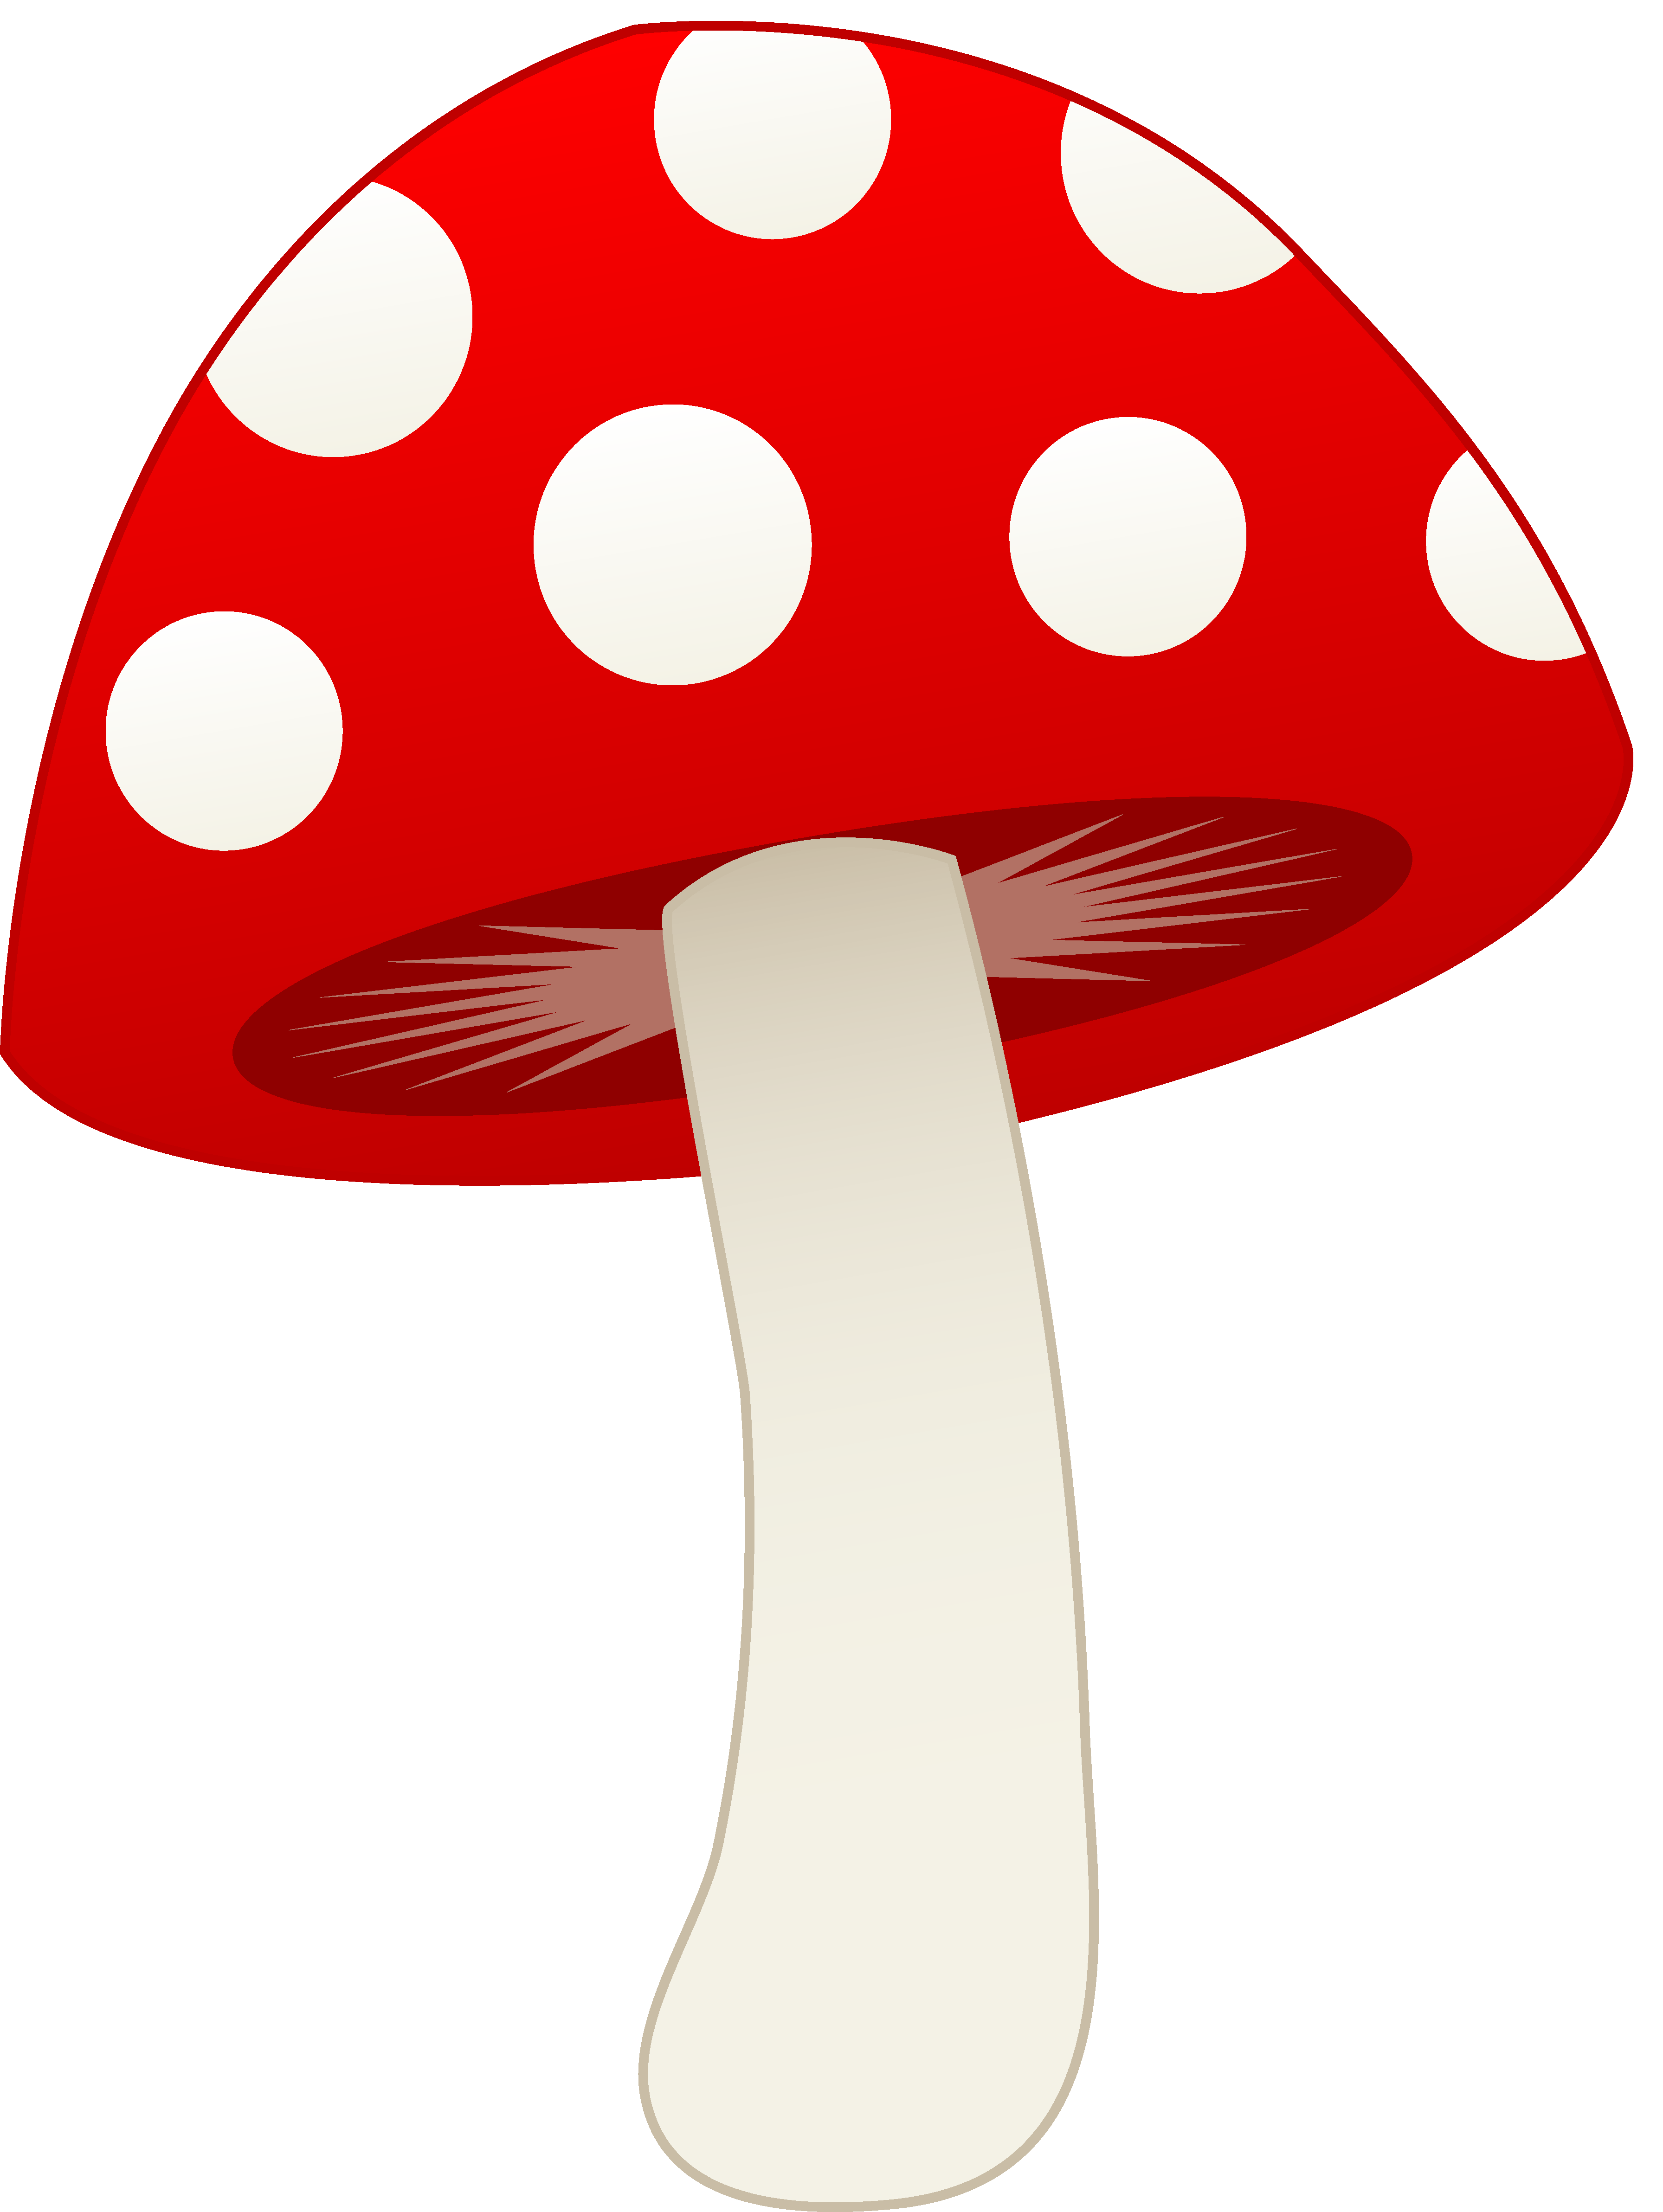 Mushroom Cartoon Pictures 